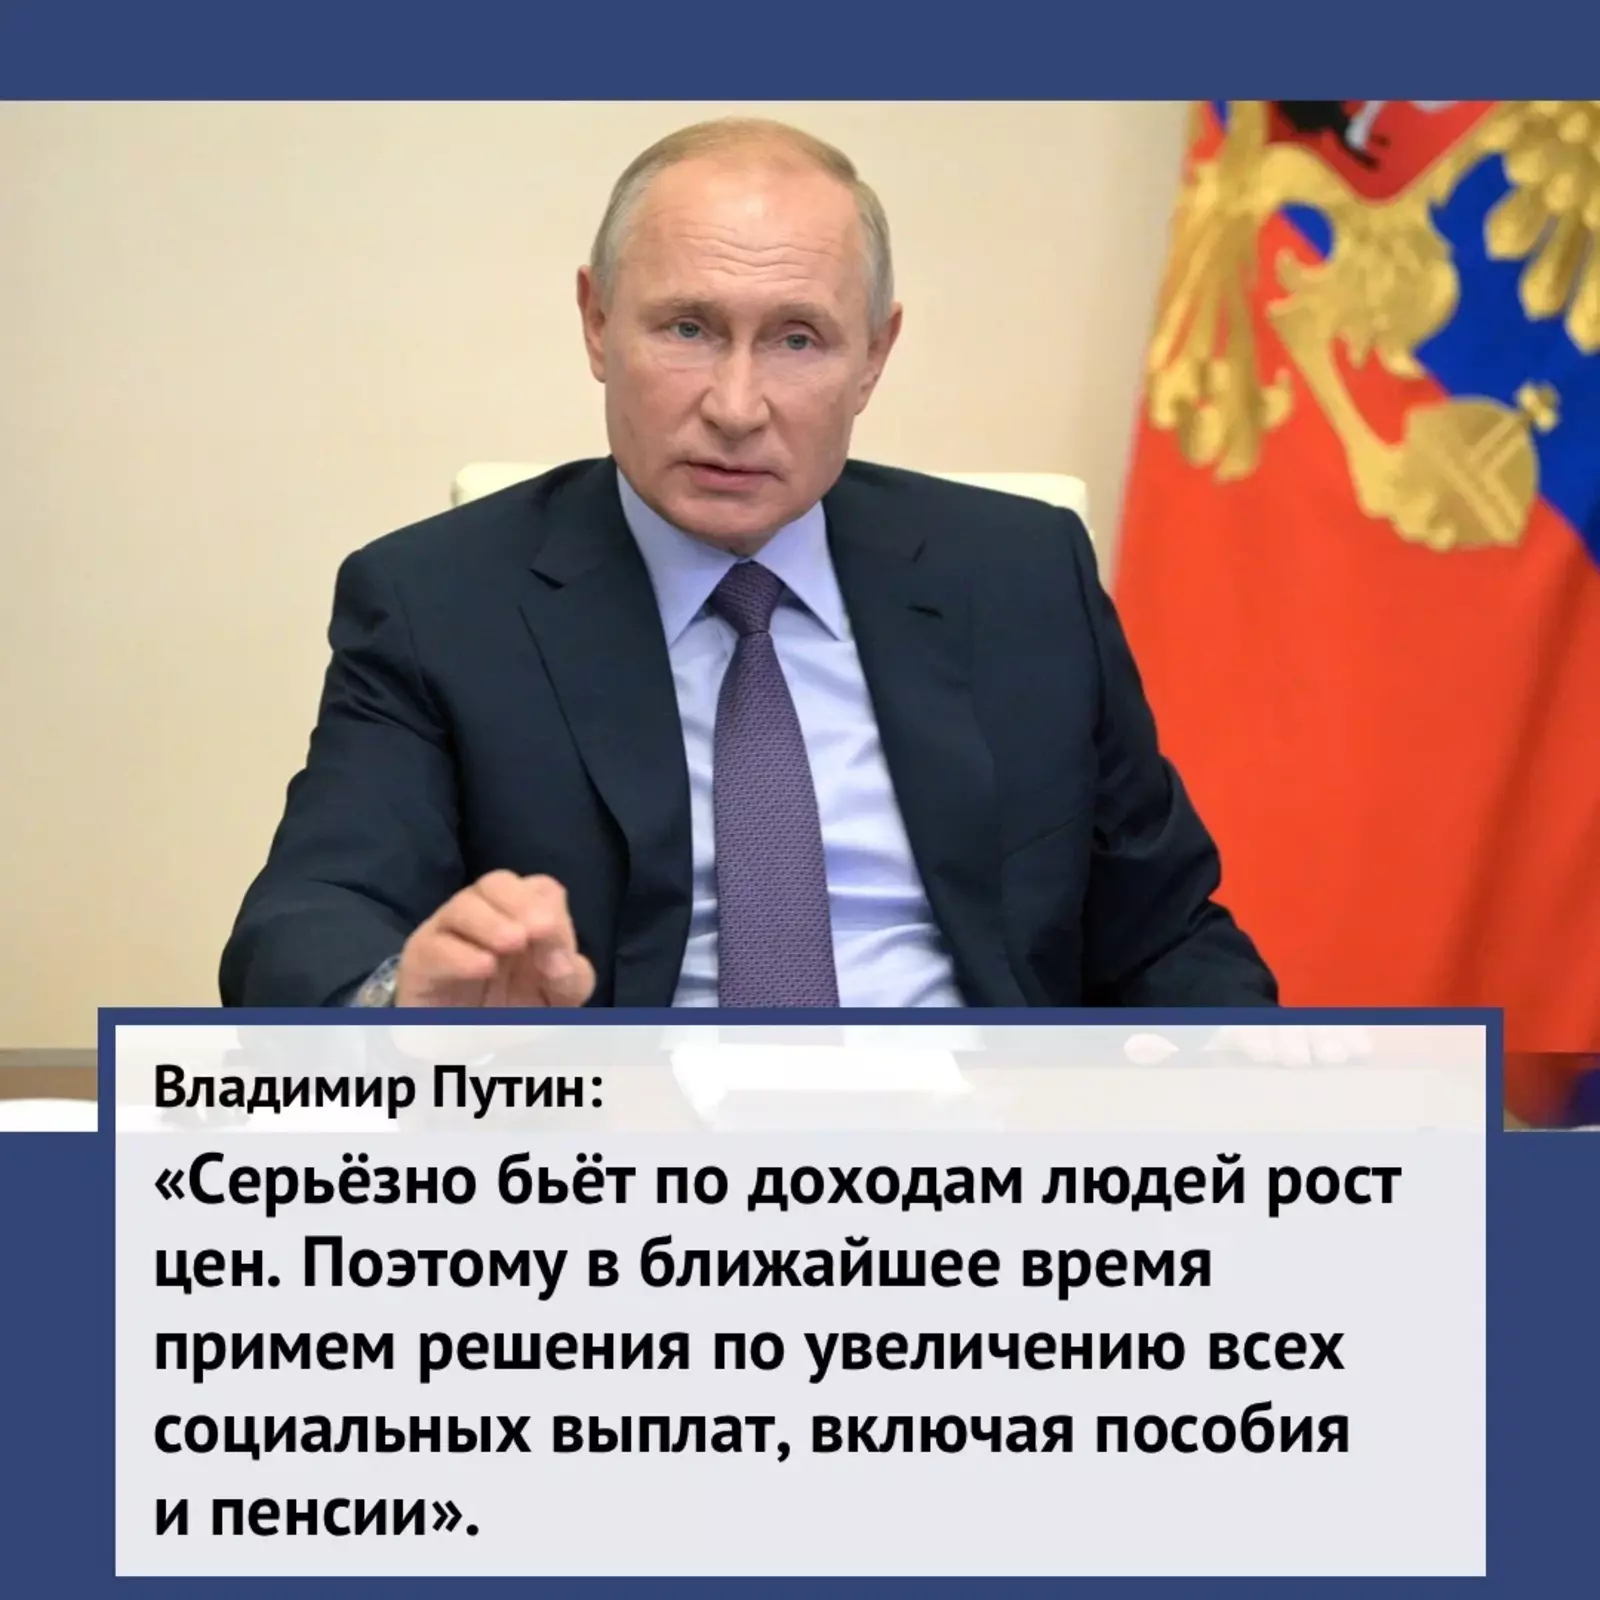 Путин подписал указ "О мерах по обеспечению социально-экономической стабильности и защиты населения в Российской Федерации"